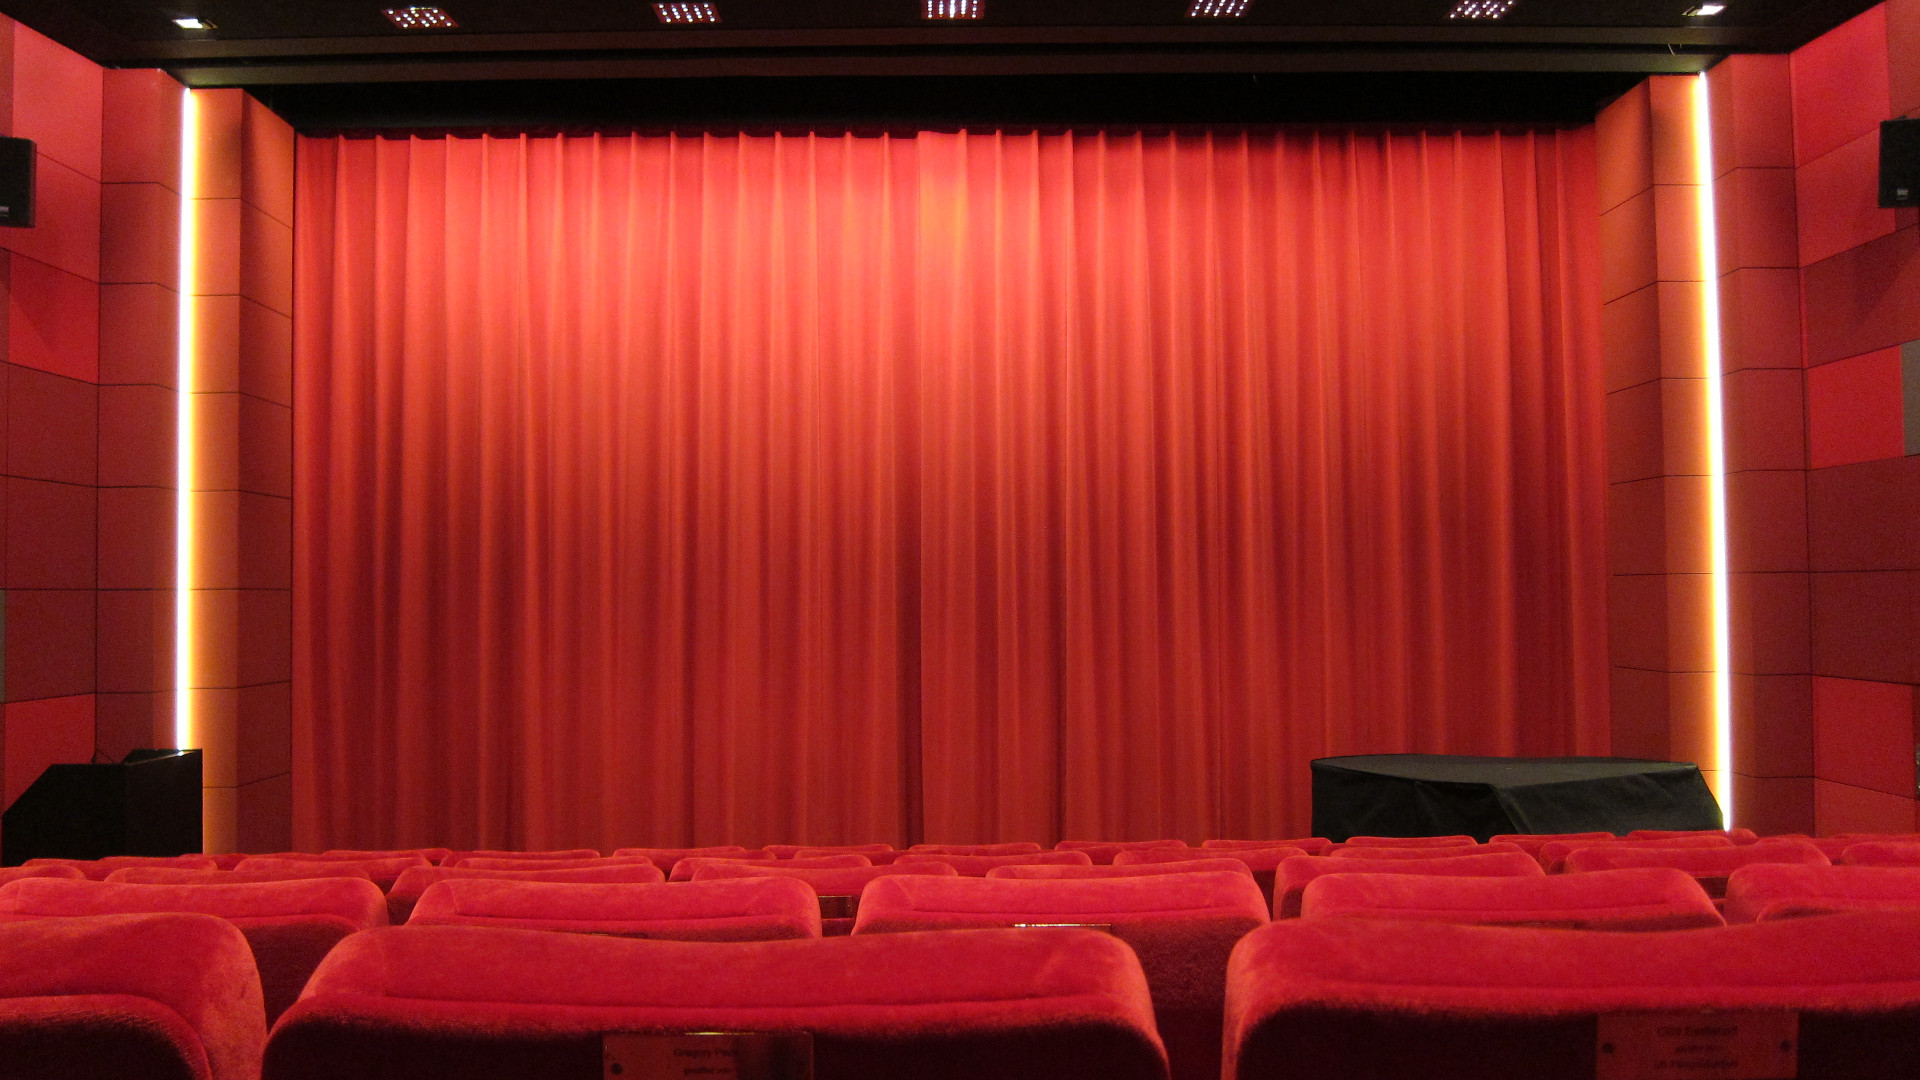 Der rote Vorhang im Kino des DFF ist schwach Beleuchter und einige rote Samtsessel sind zu sehen.